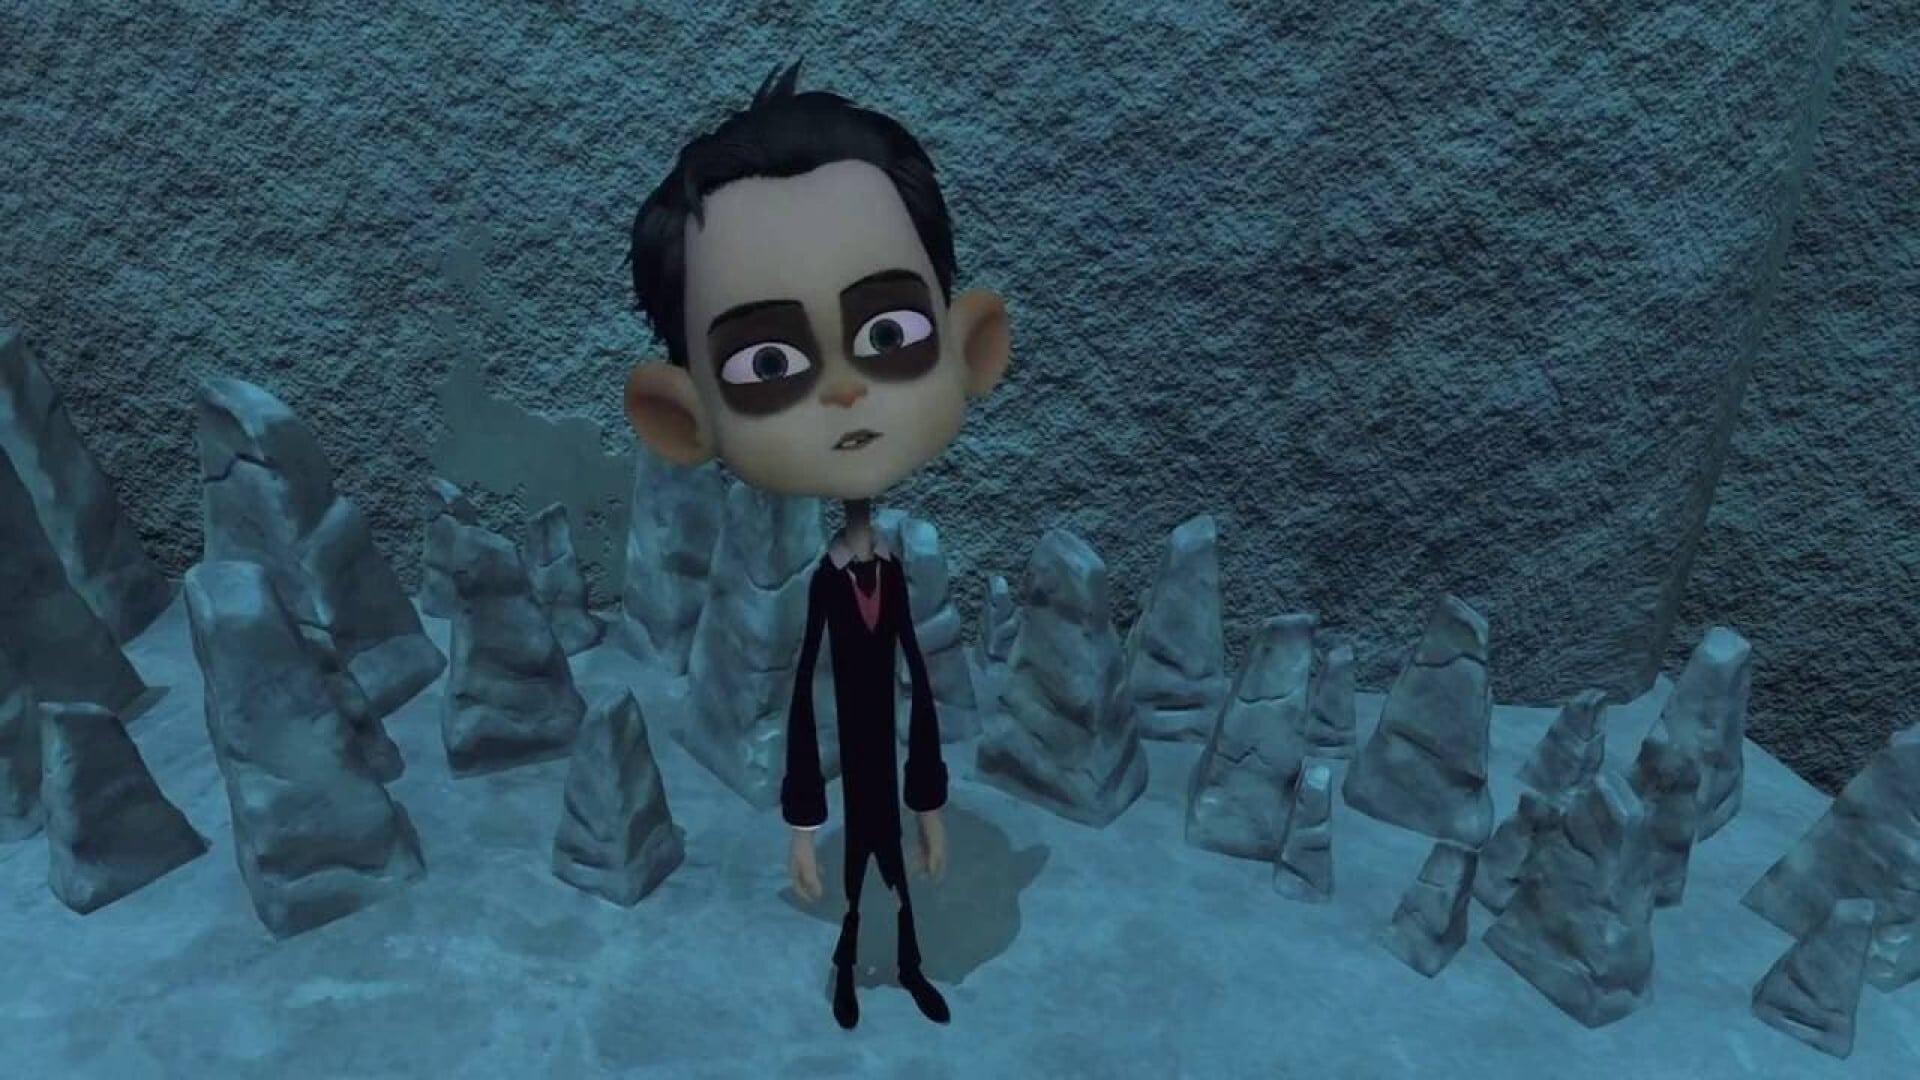 Howard Lovecraft & the Frozen Kingdom backdrop